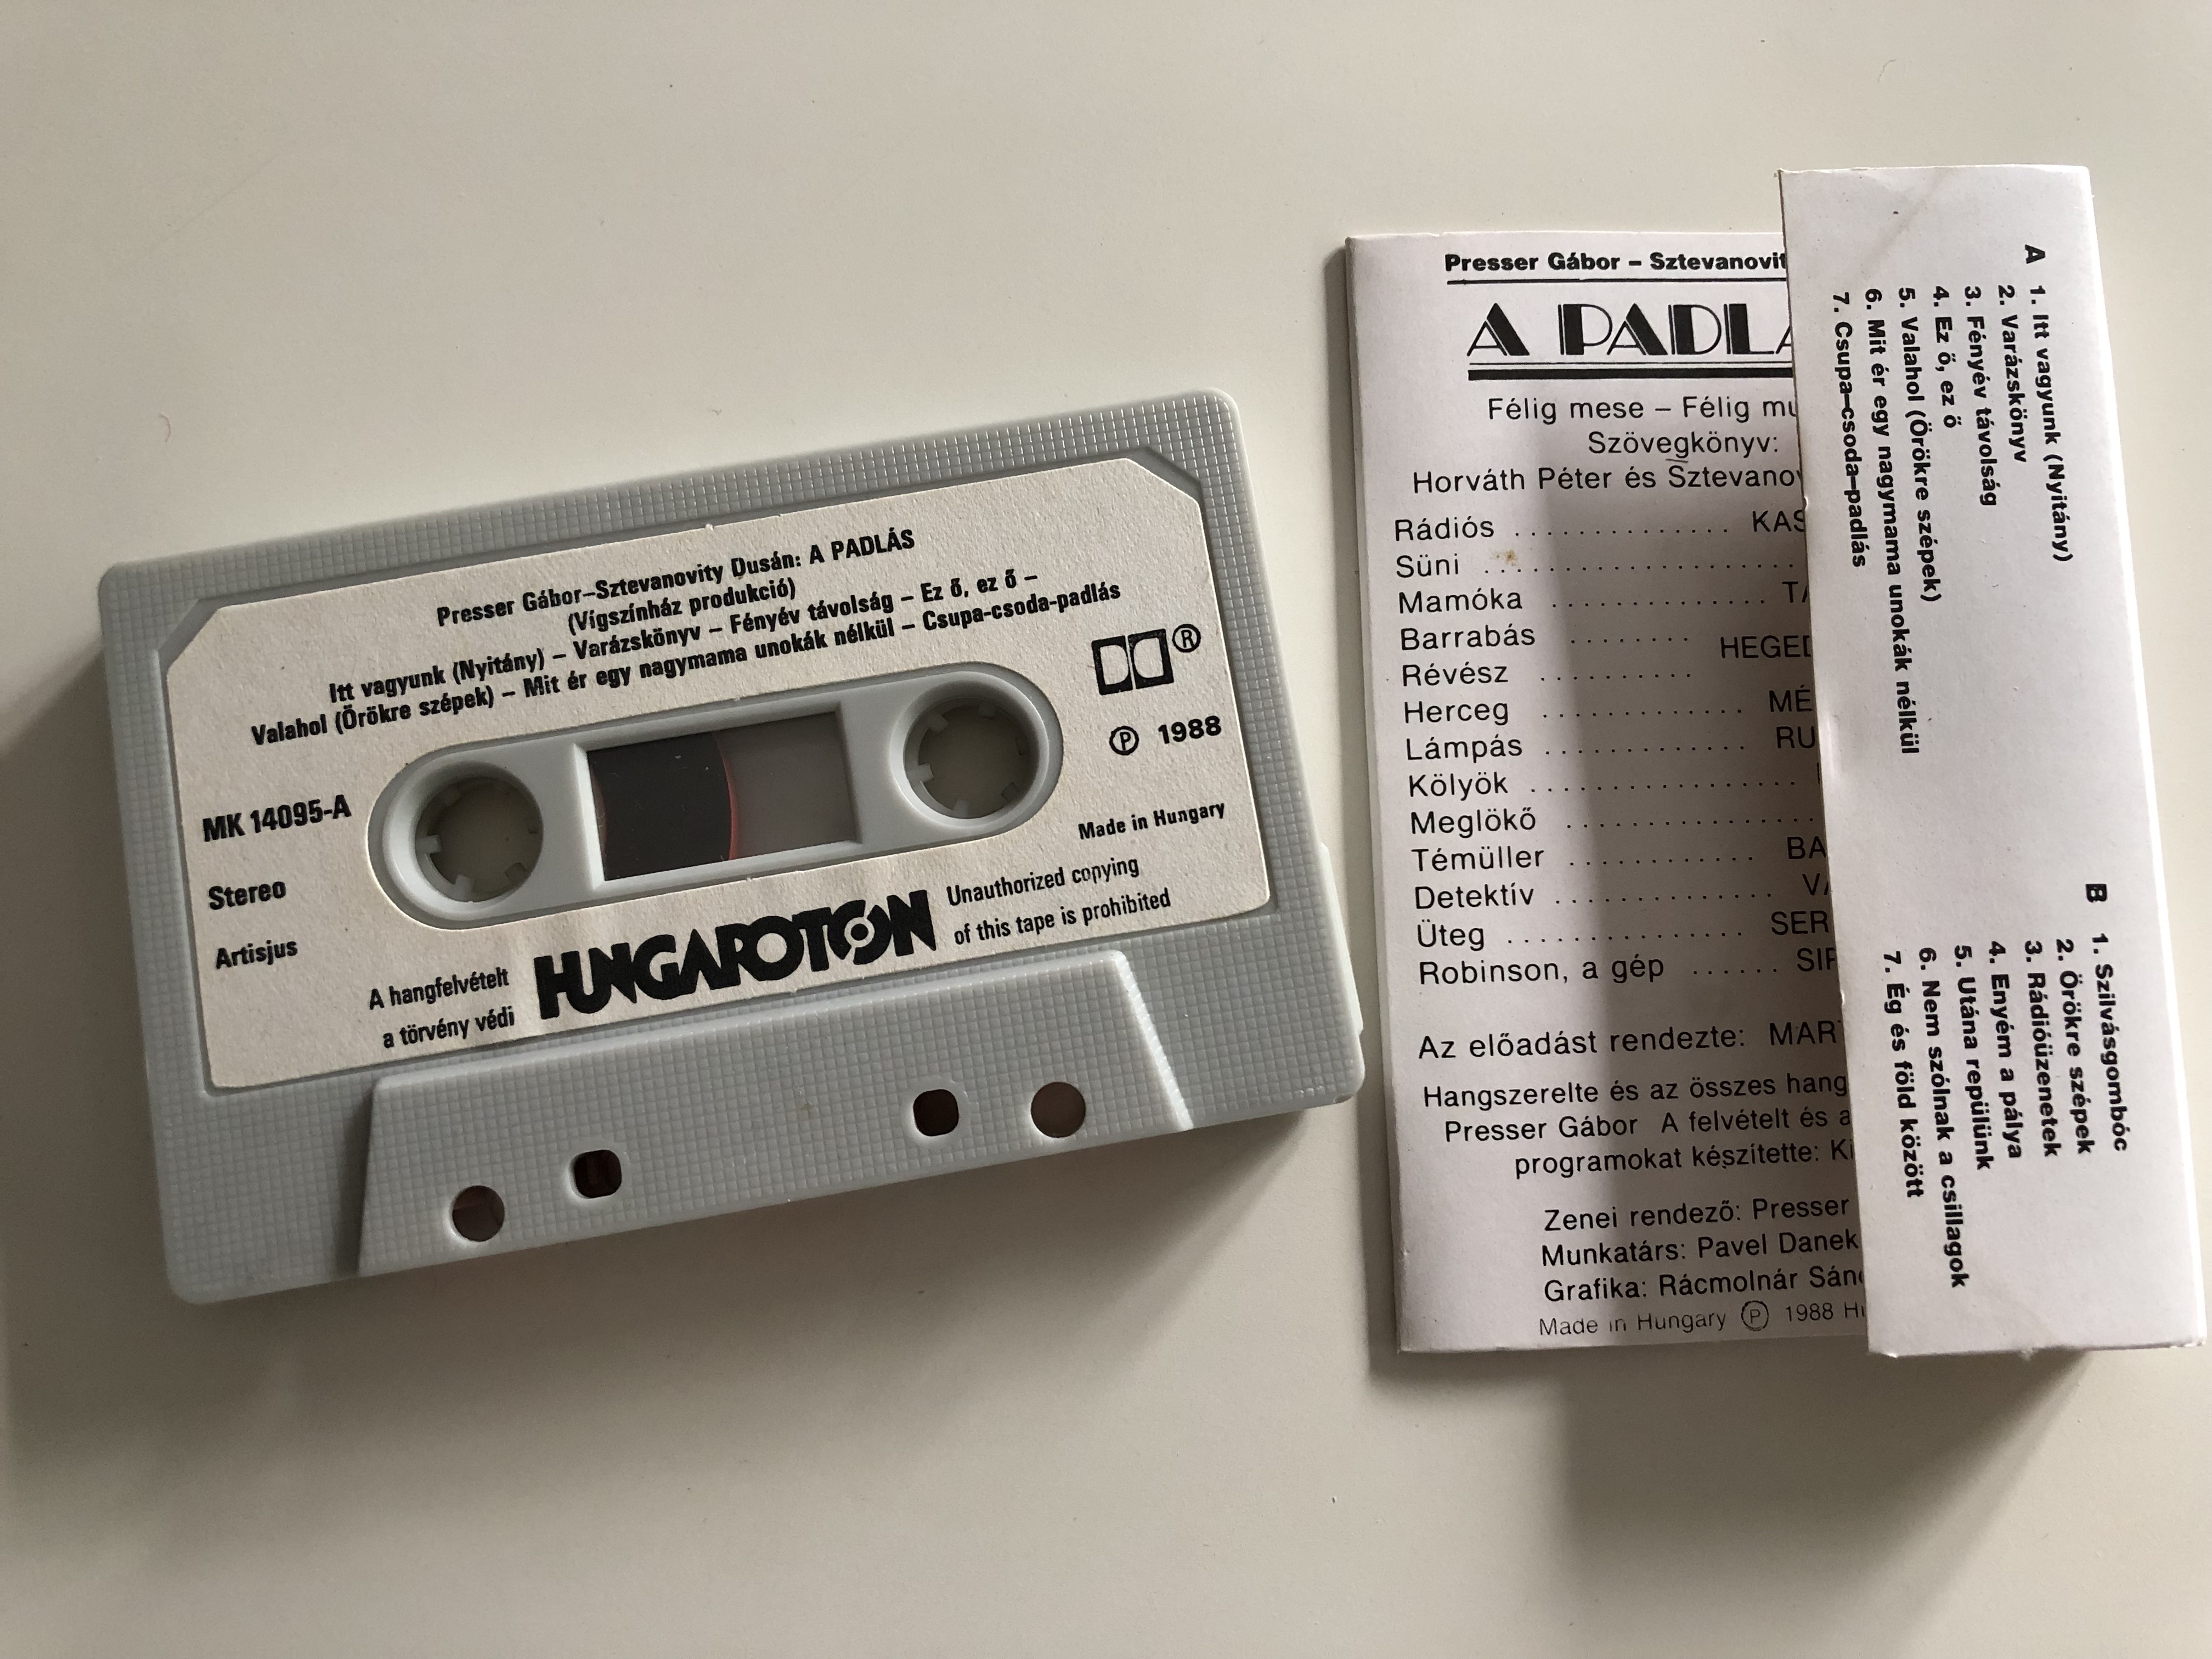 presser-g-bor-sztevanovity-dus-n-a-padl-s-hungaroton-cassette-stereo-mk-14095-2-.jpg